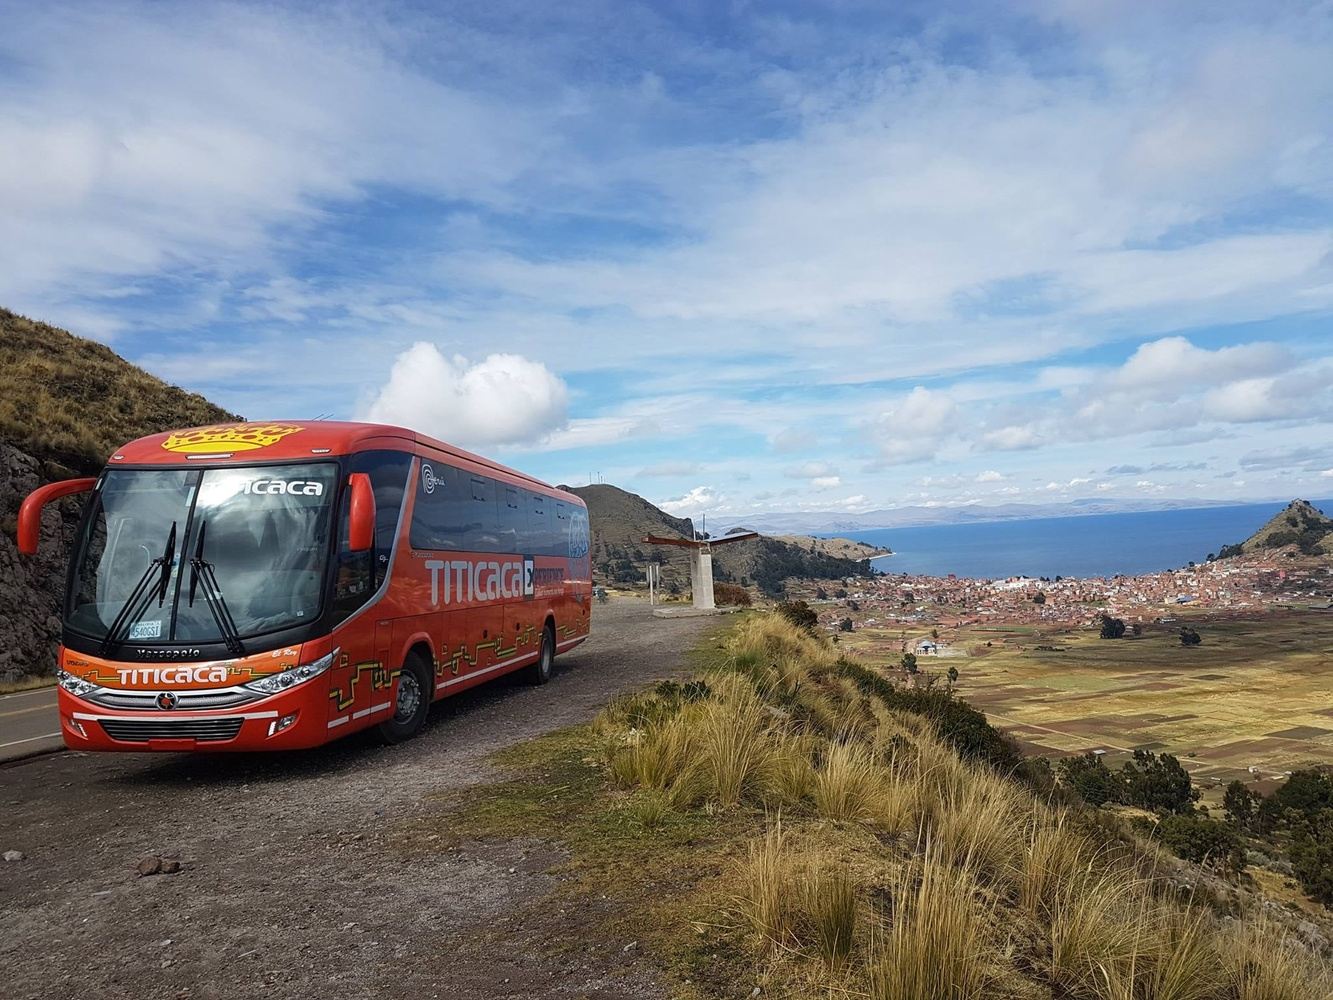 Titicaca Bolivia Transporte | Puno to Copacabana bus Tickets 14:00